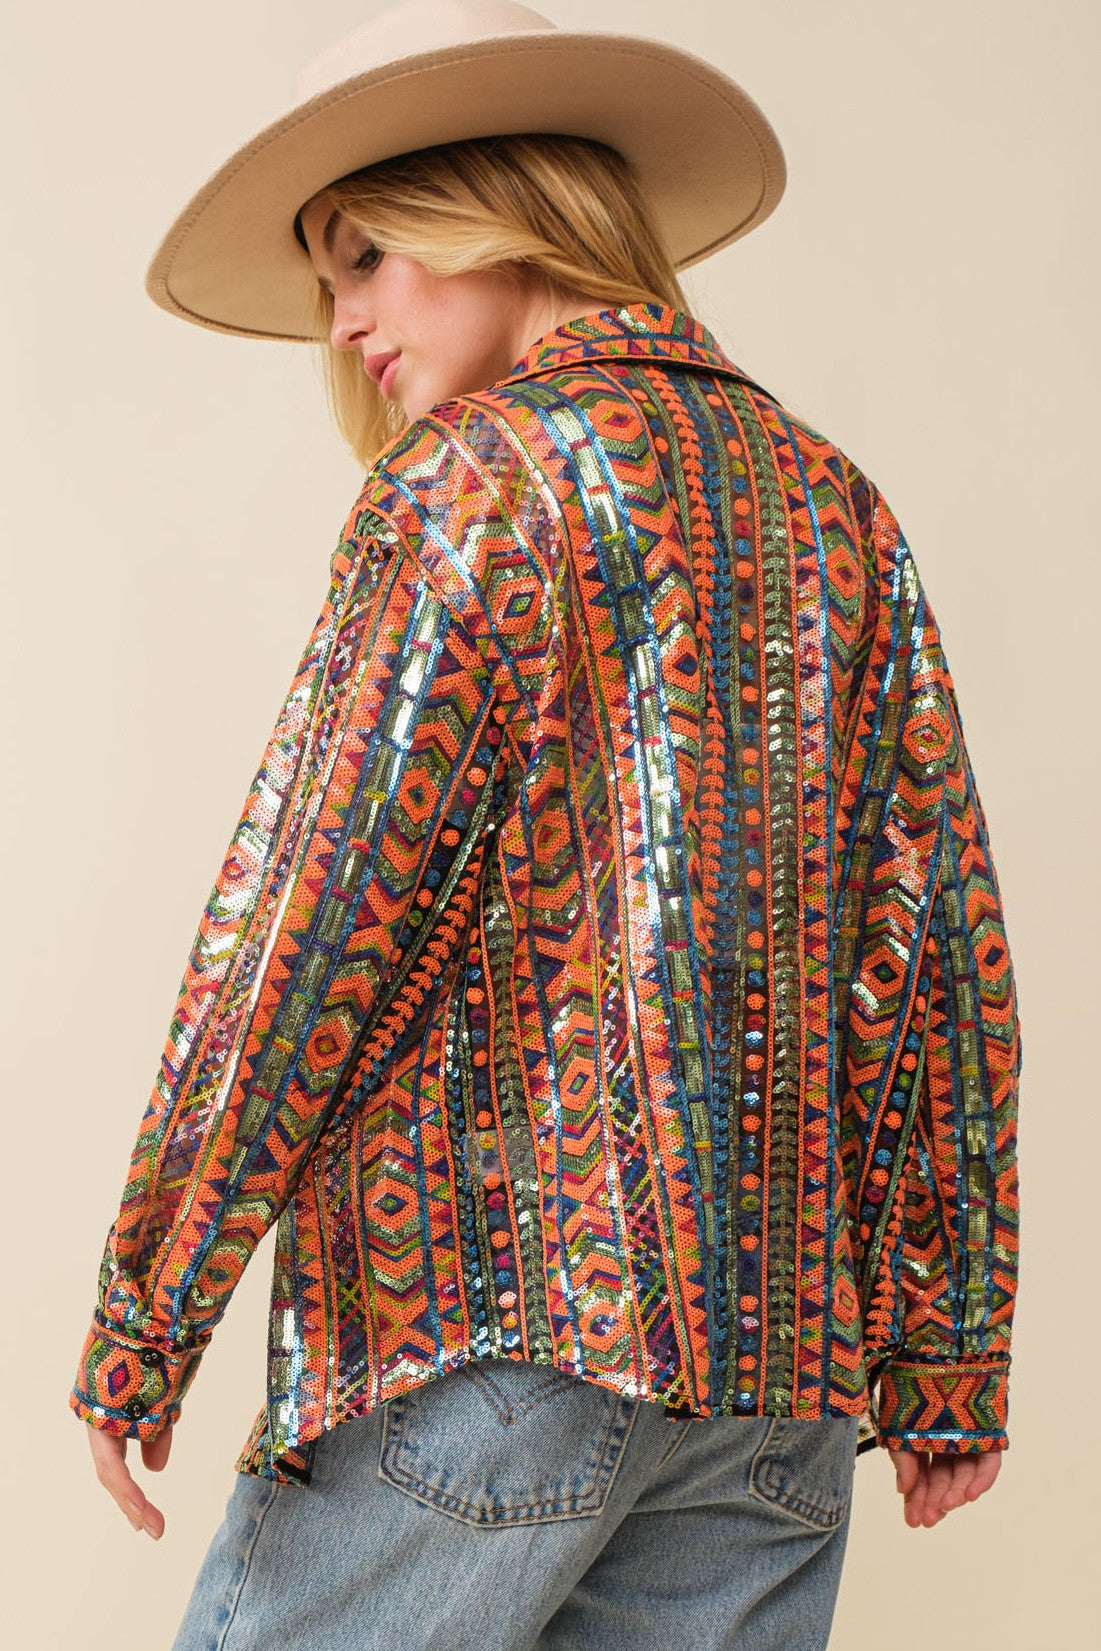 Aztec Sequin Western Shirt